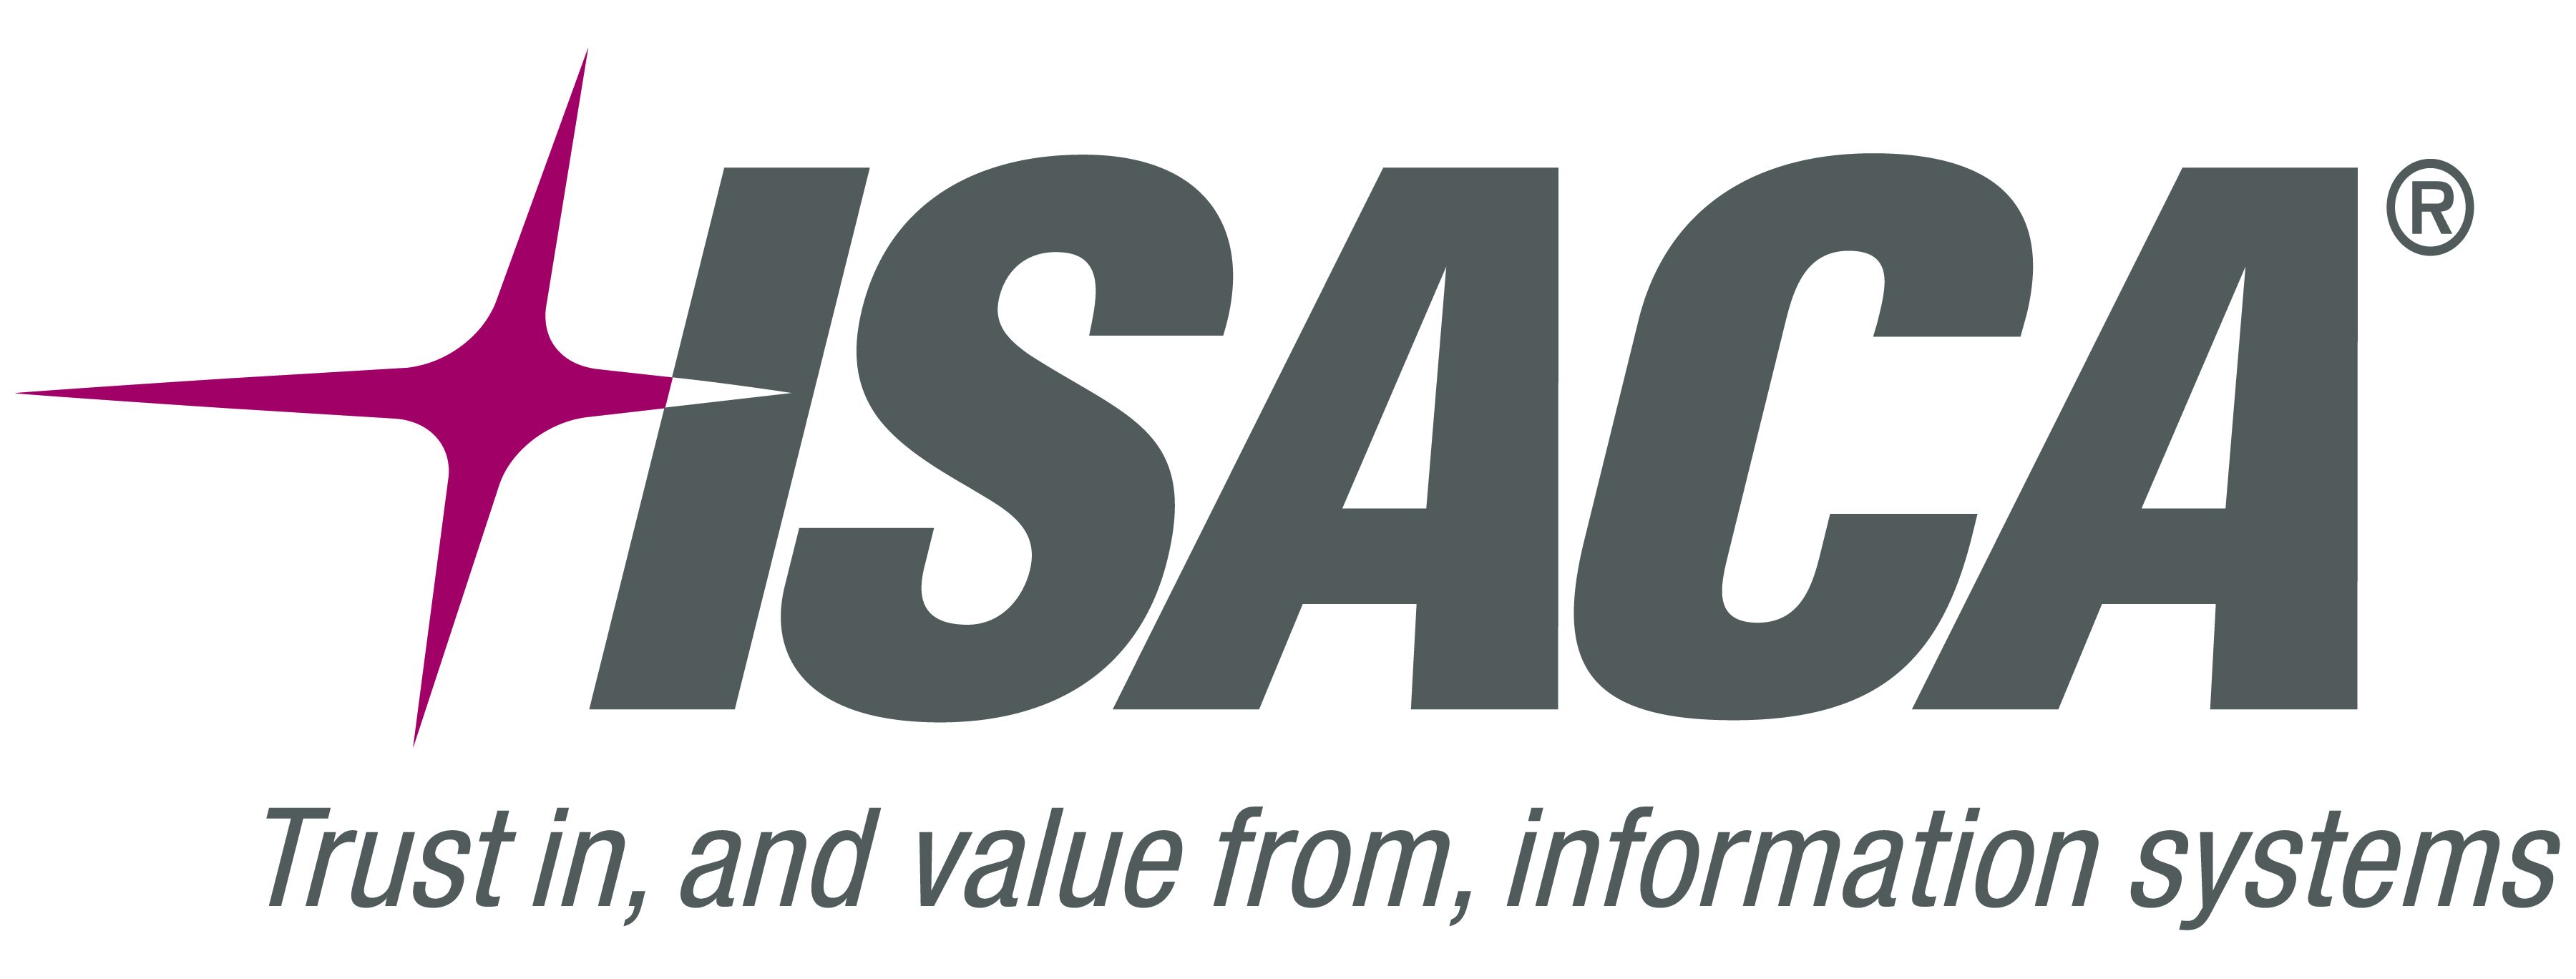 Logo ISACA(1)